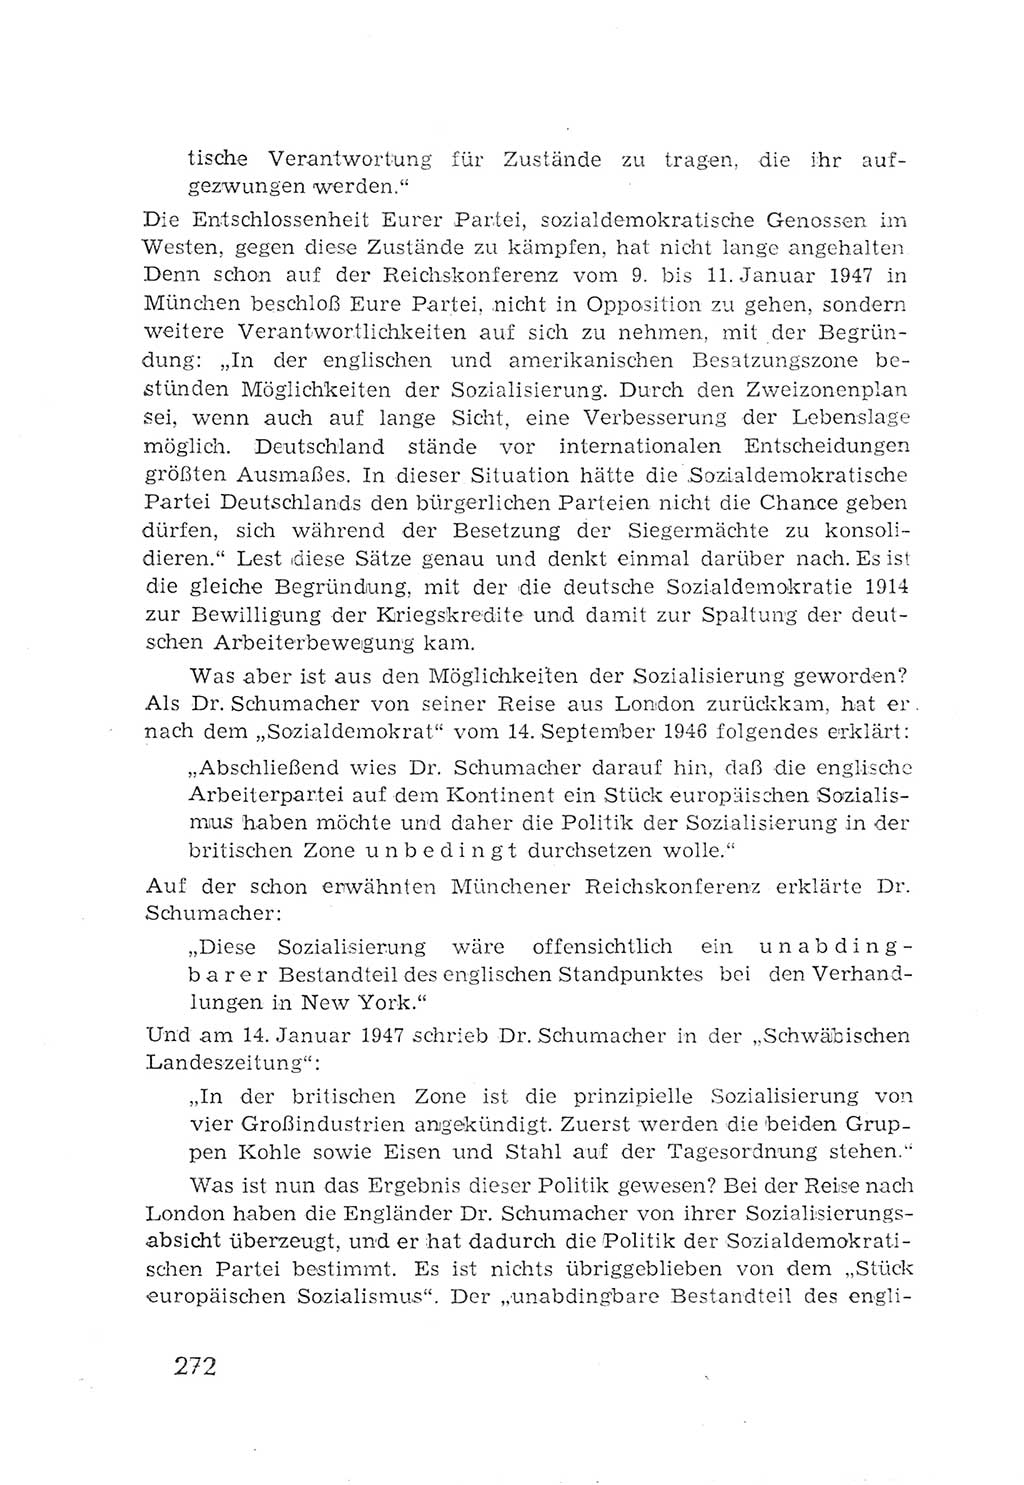 Protokoll der Verhandlungen des 2. Parteitages der Sozialistischen Einheitspartei Deutschlands (SED) [Sowjetische Besatzungszone (SBZ) Deutschlands] 1947, Seite 272 (Prot. Verh. 2. PT SED SBZ Dtl. 1947, S. 272)